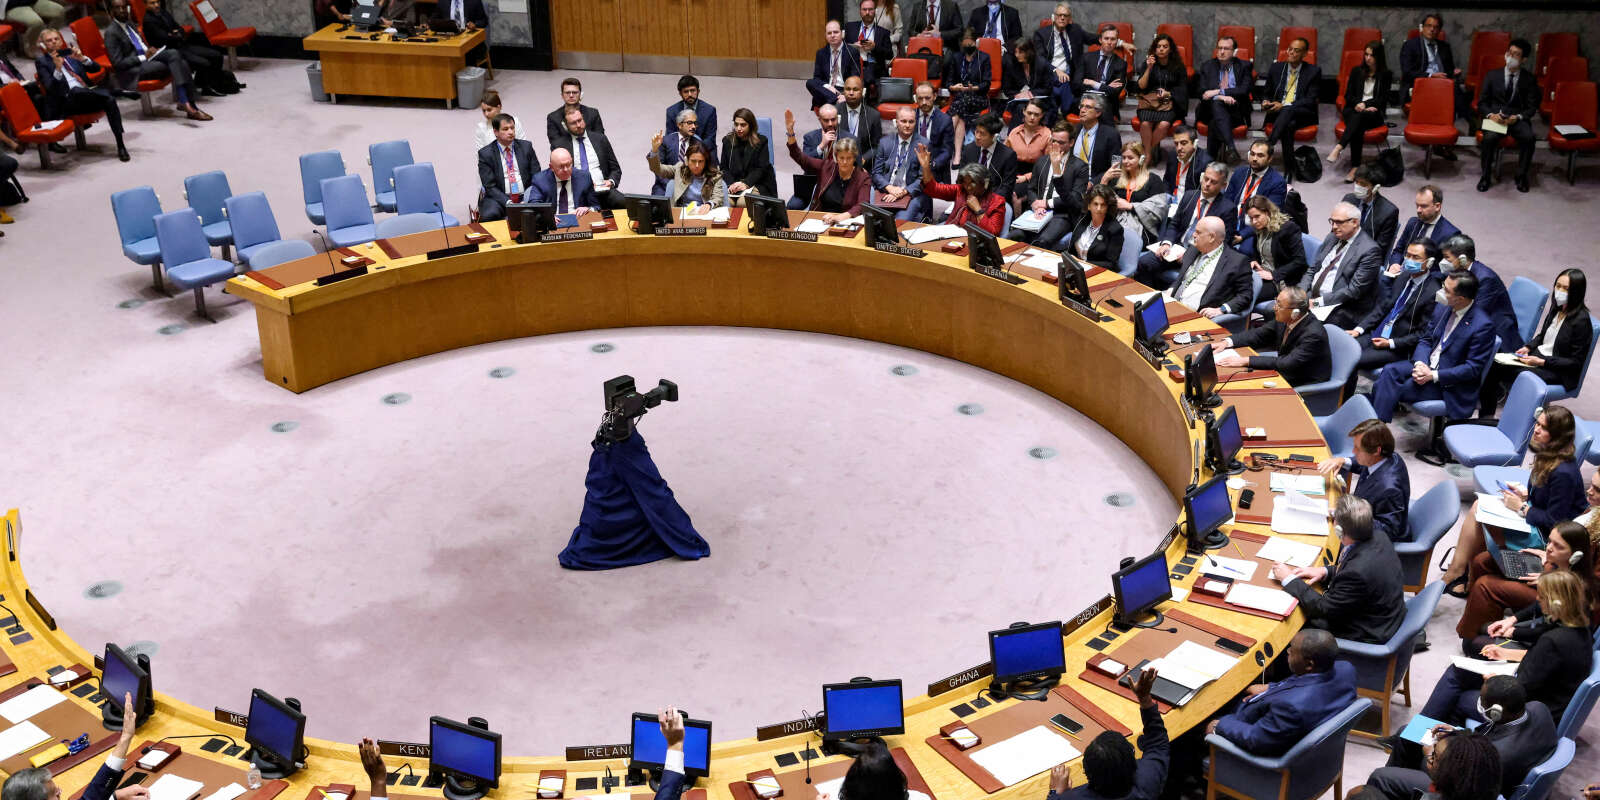  Les membres du Conseil de sécurité des Nations unies votent une résolution condamnant les référendums sur l’annexion de plusieurs régions de l’Ukraine occupées par la Russie, alors qu’ils se réunissent à la demande de la Russie pour discuter des dommages causés à deux gazoducs russes vers l’Europe, à New York, États-Unis, le 30 septembre 2022.